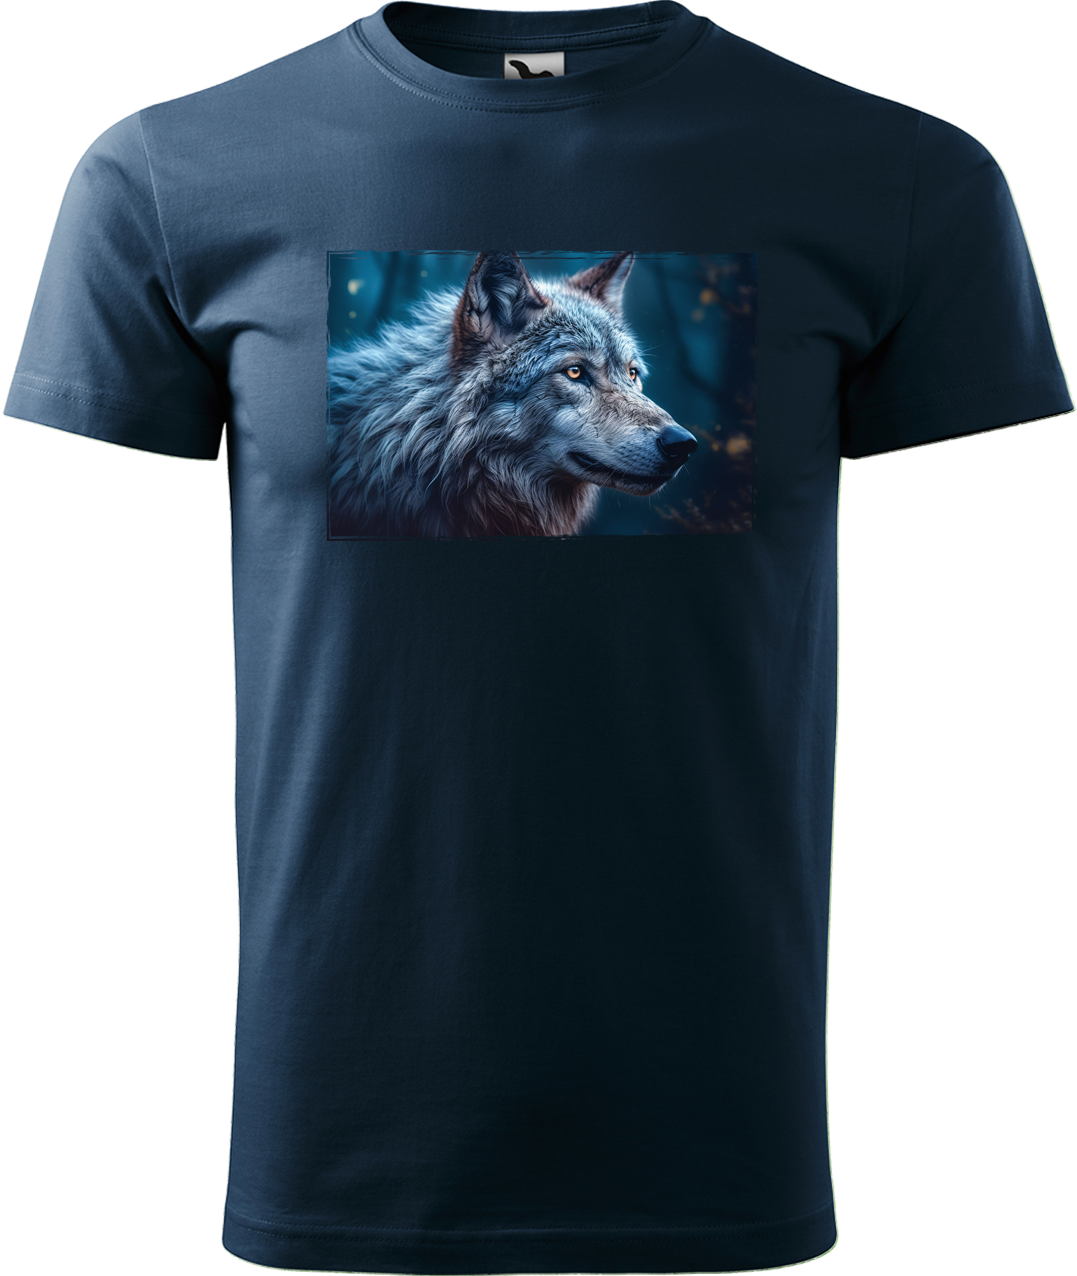 Pánské tričko s vlkem - Modrý vlk Velikost: L, Barva: Námořní modrá (02)